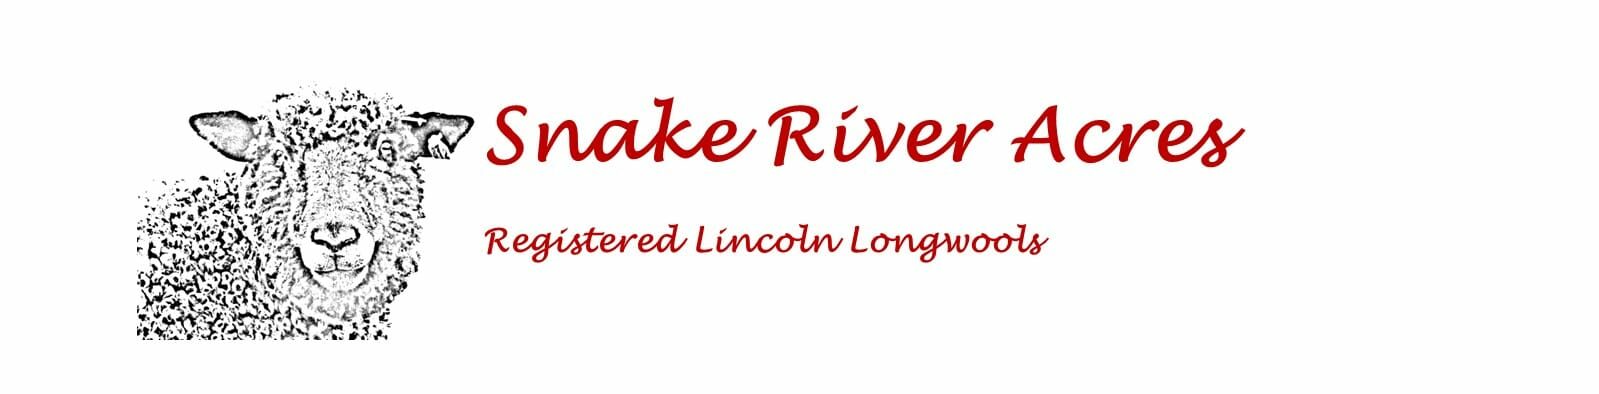 Snake River Acres